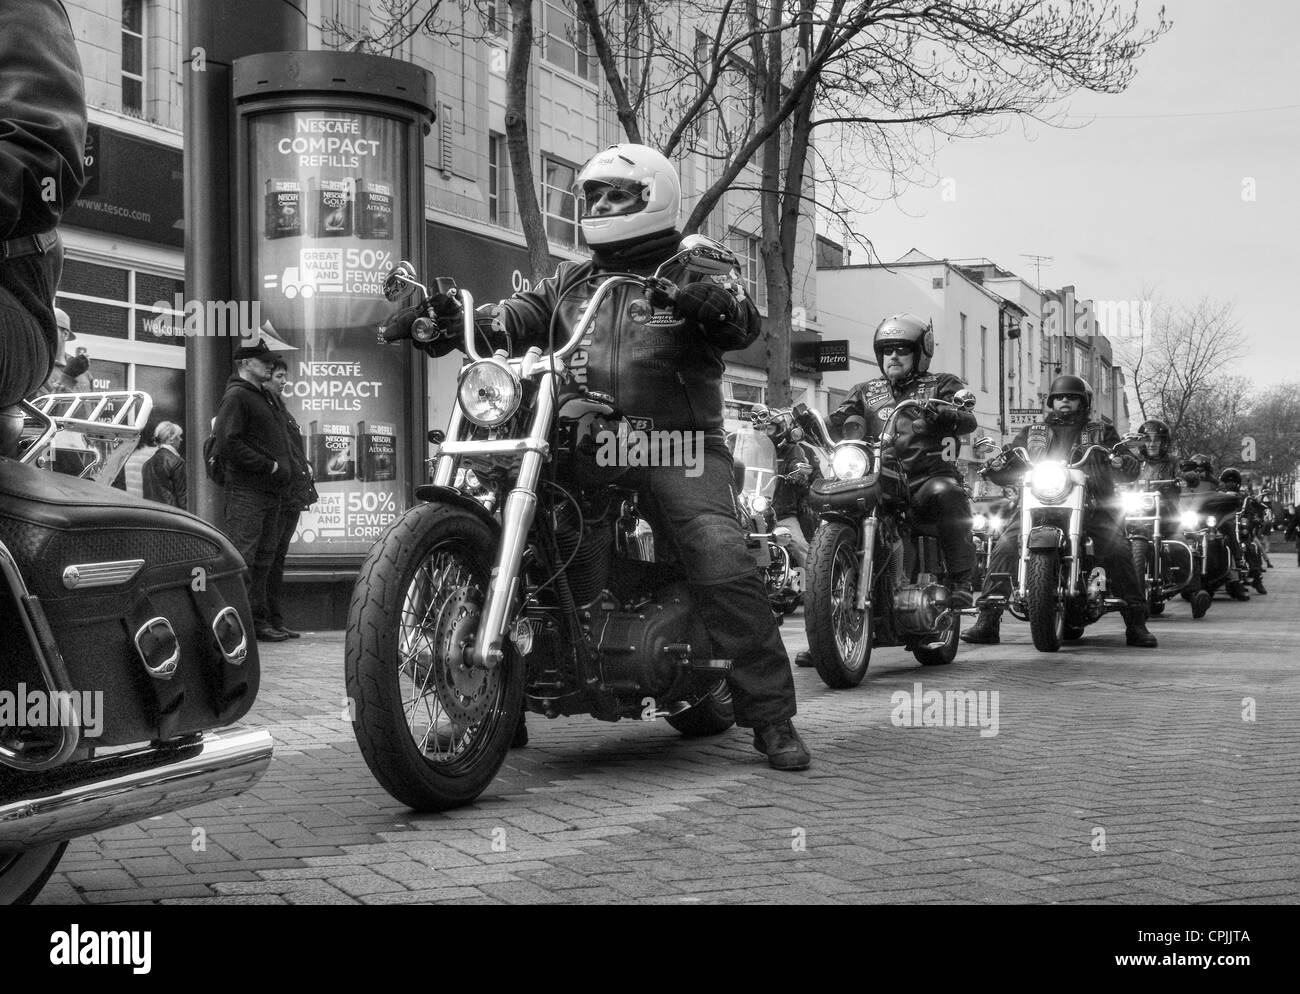 Una Harley Davidson rally nel centro di Northampton, un evento annuale di raccolta fondi per beneficenza Foto Stock